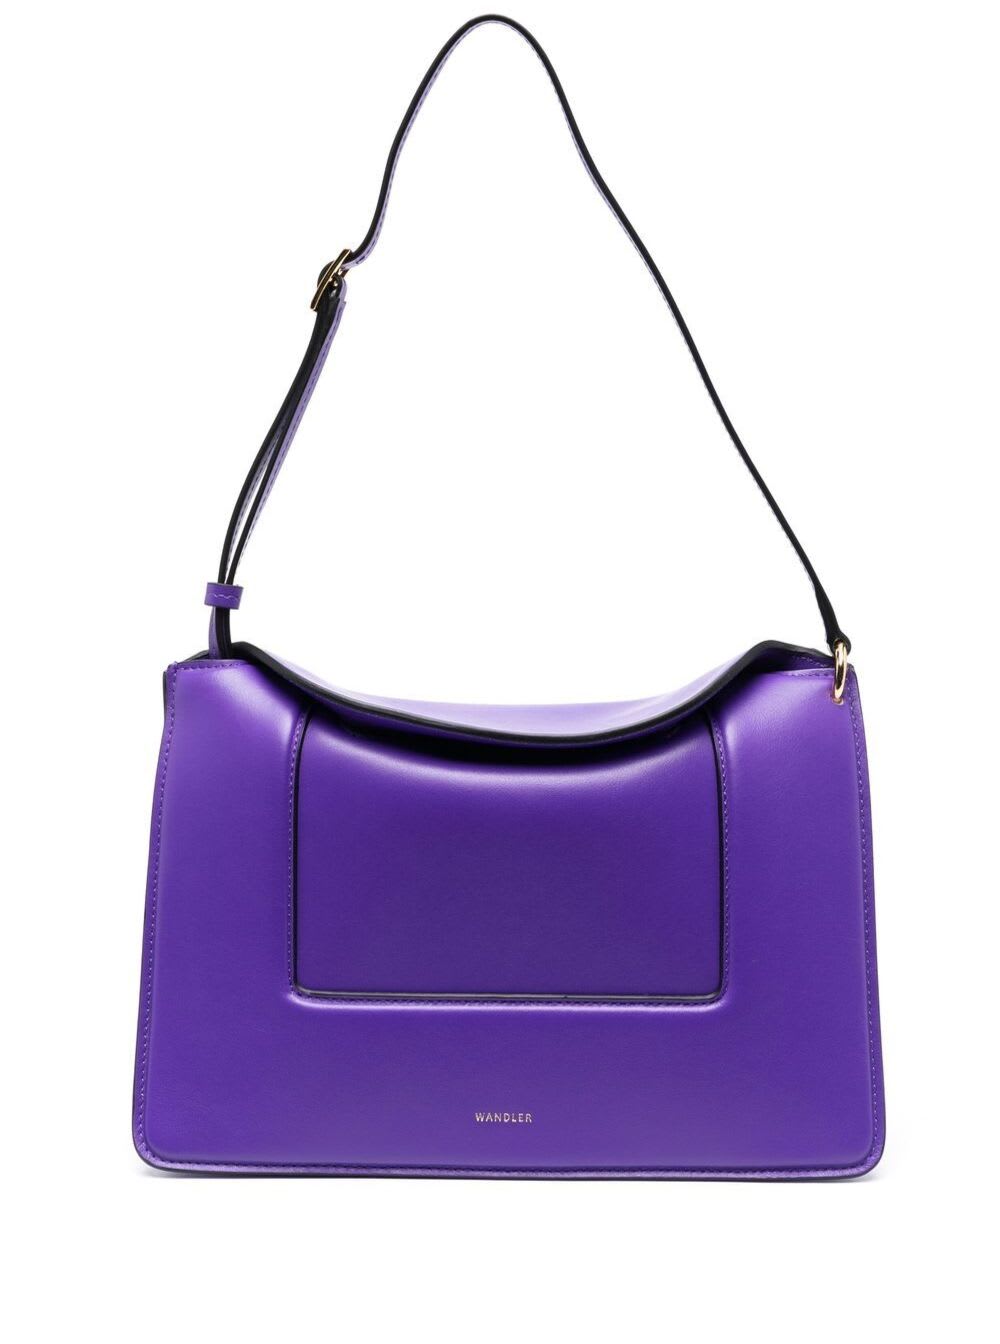 Wandler Penelope leather shoulder bag - Purple